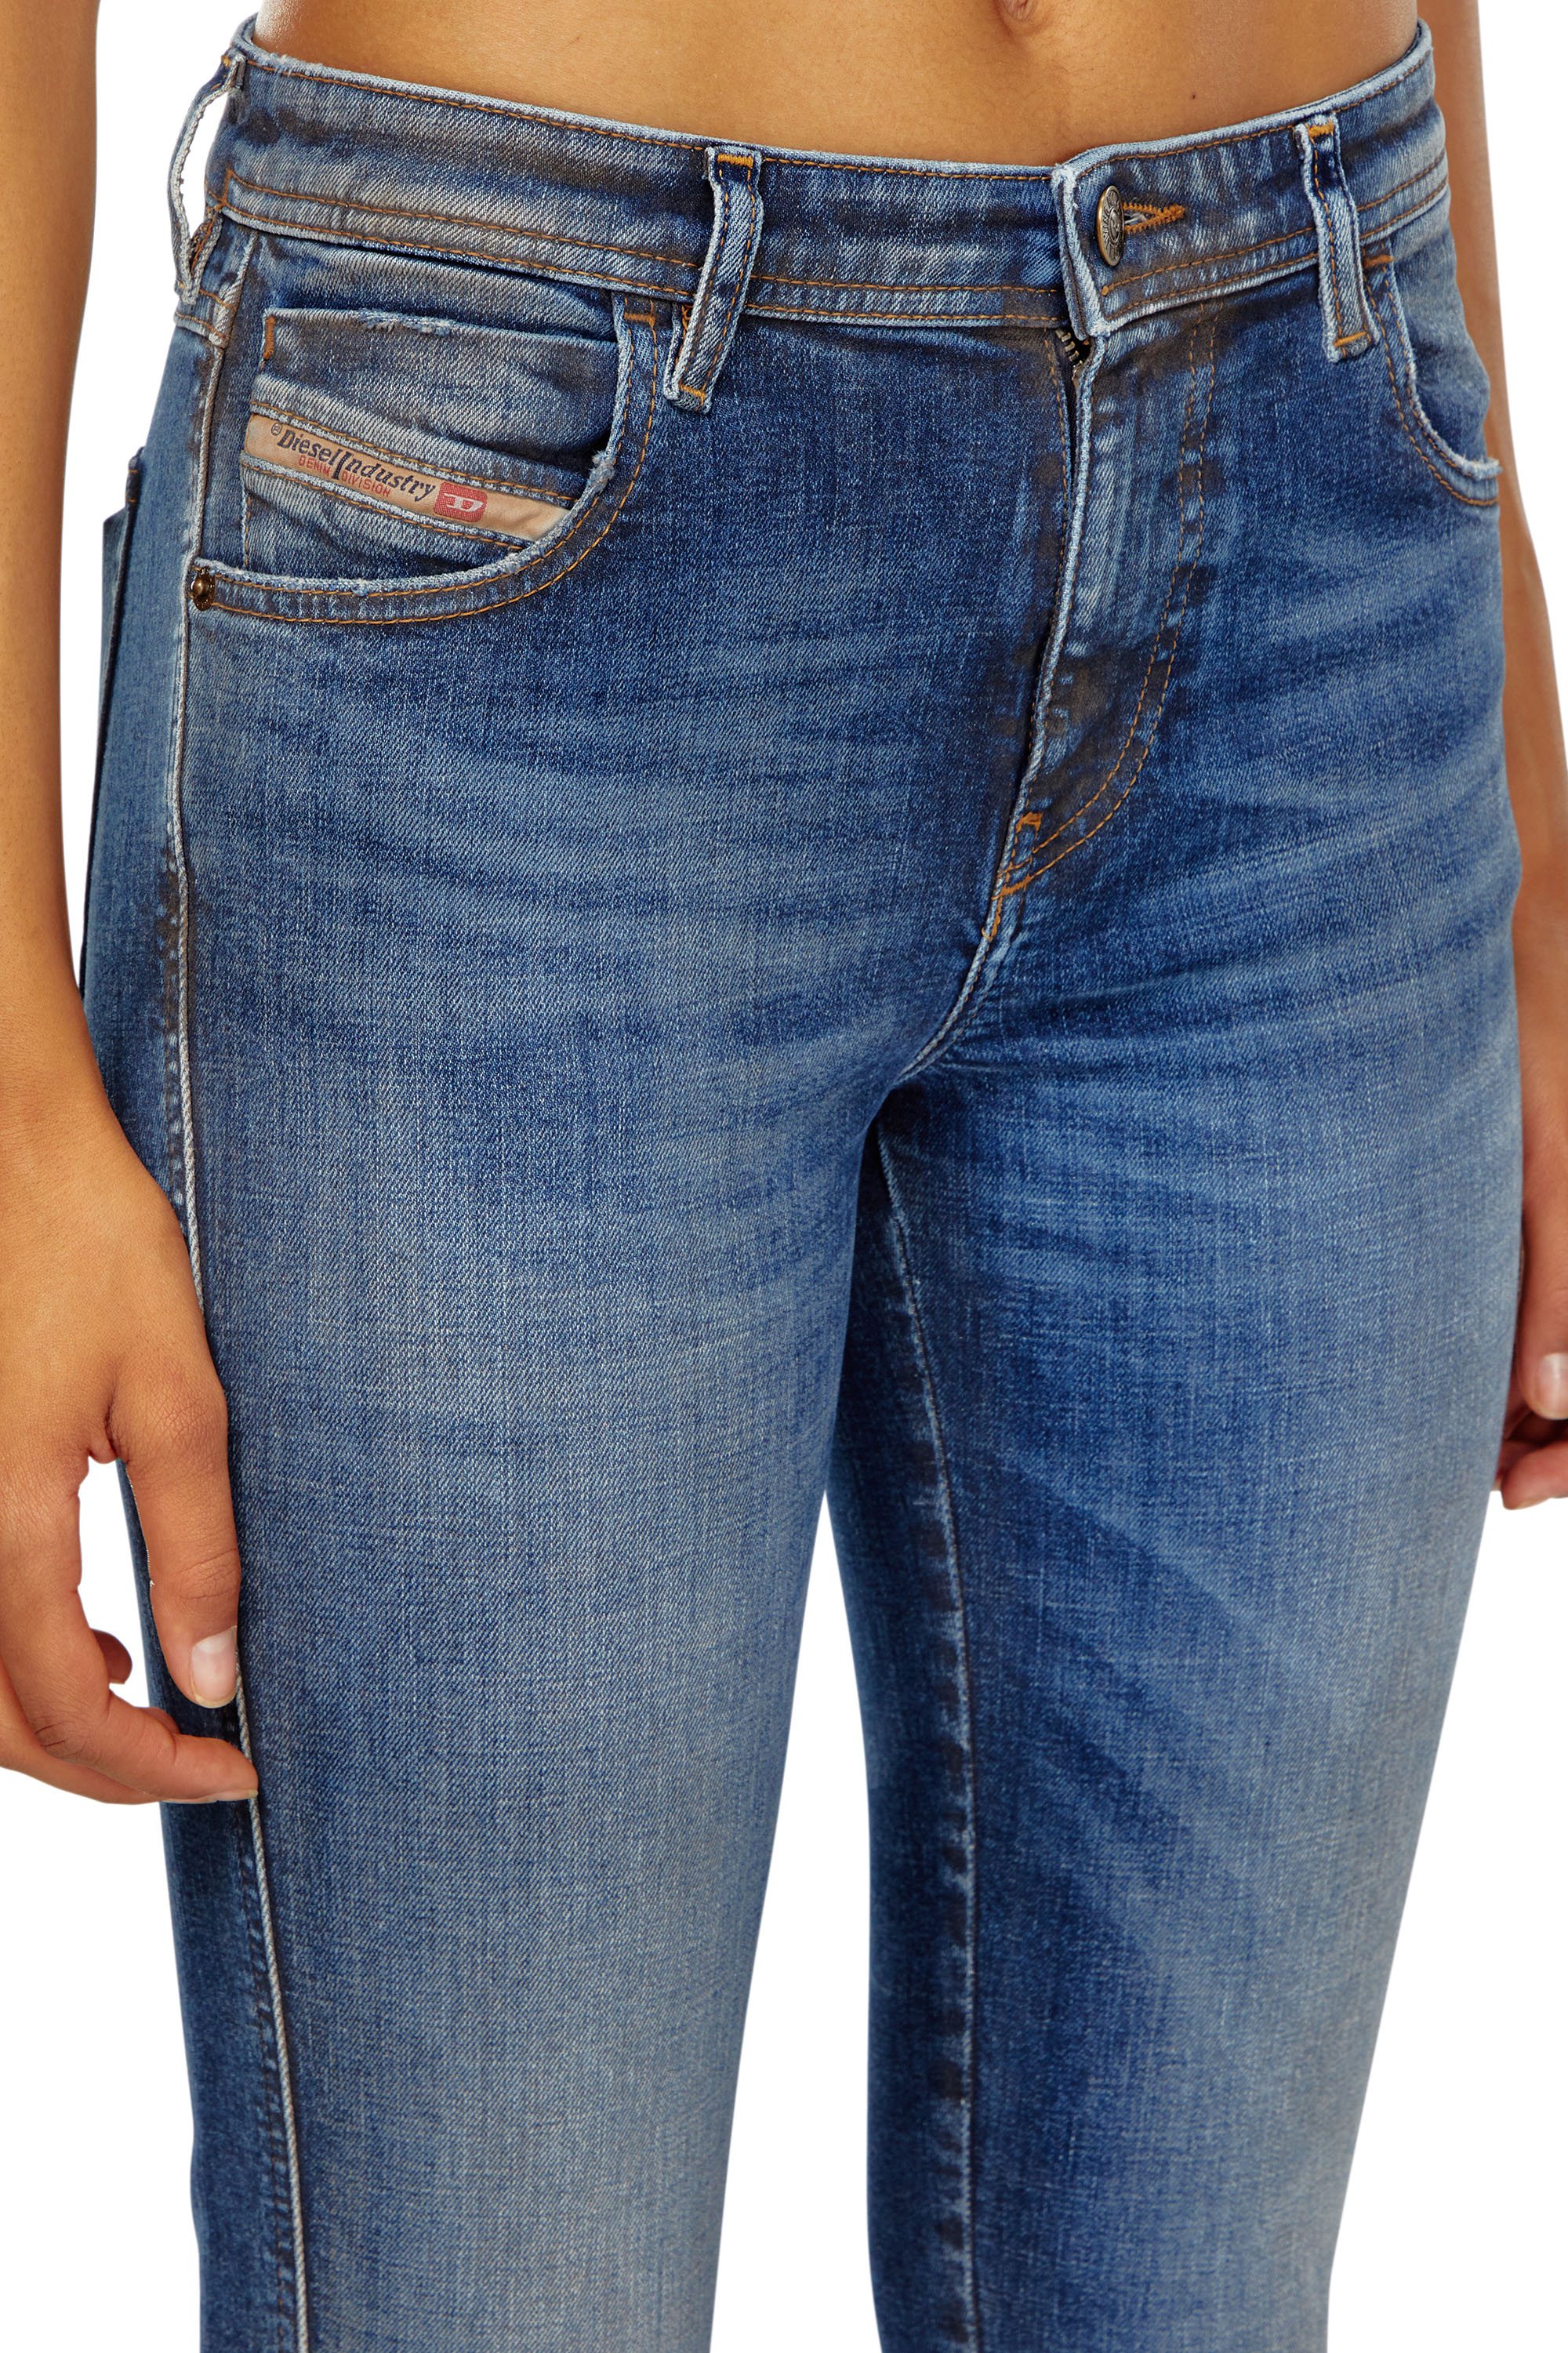 Diesel - Skinny Jeans 2015 Babhila 09J32, Mujer Skinny Jeans - 2015 Babhila in Azul marino - Image 4